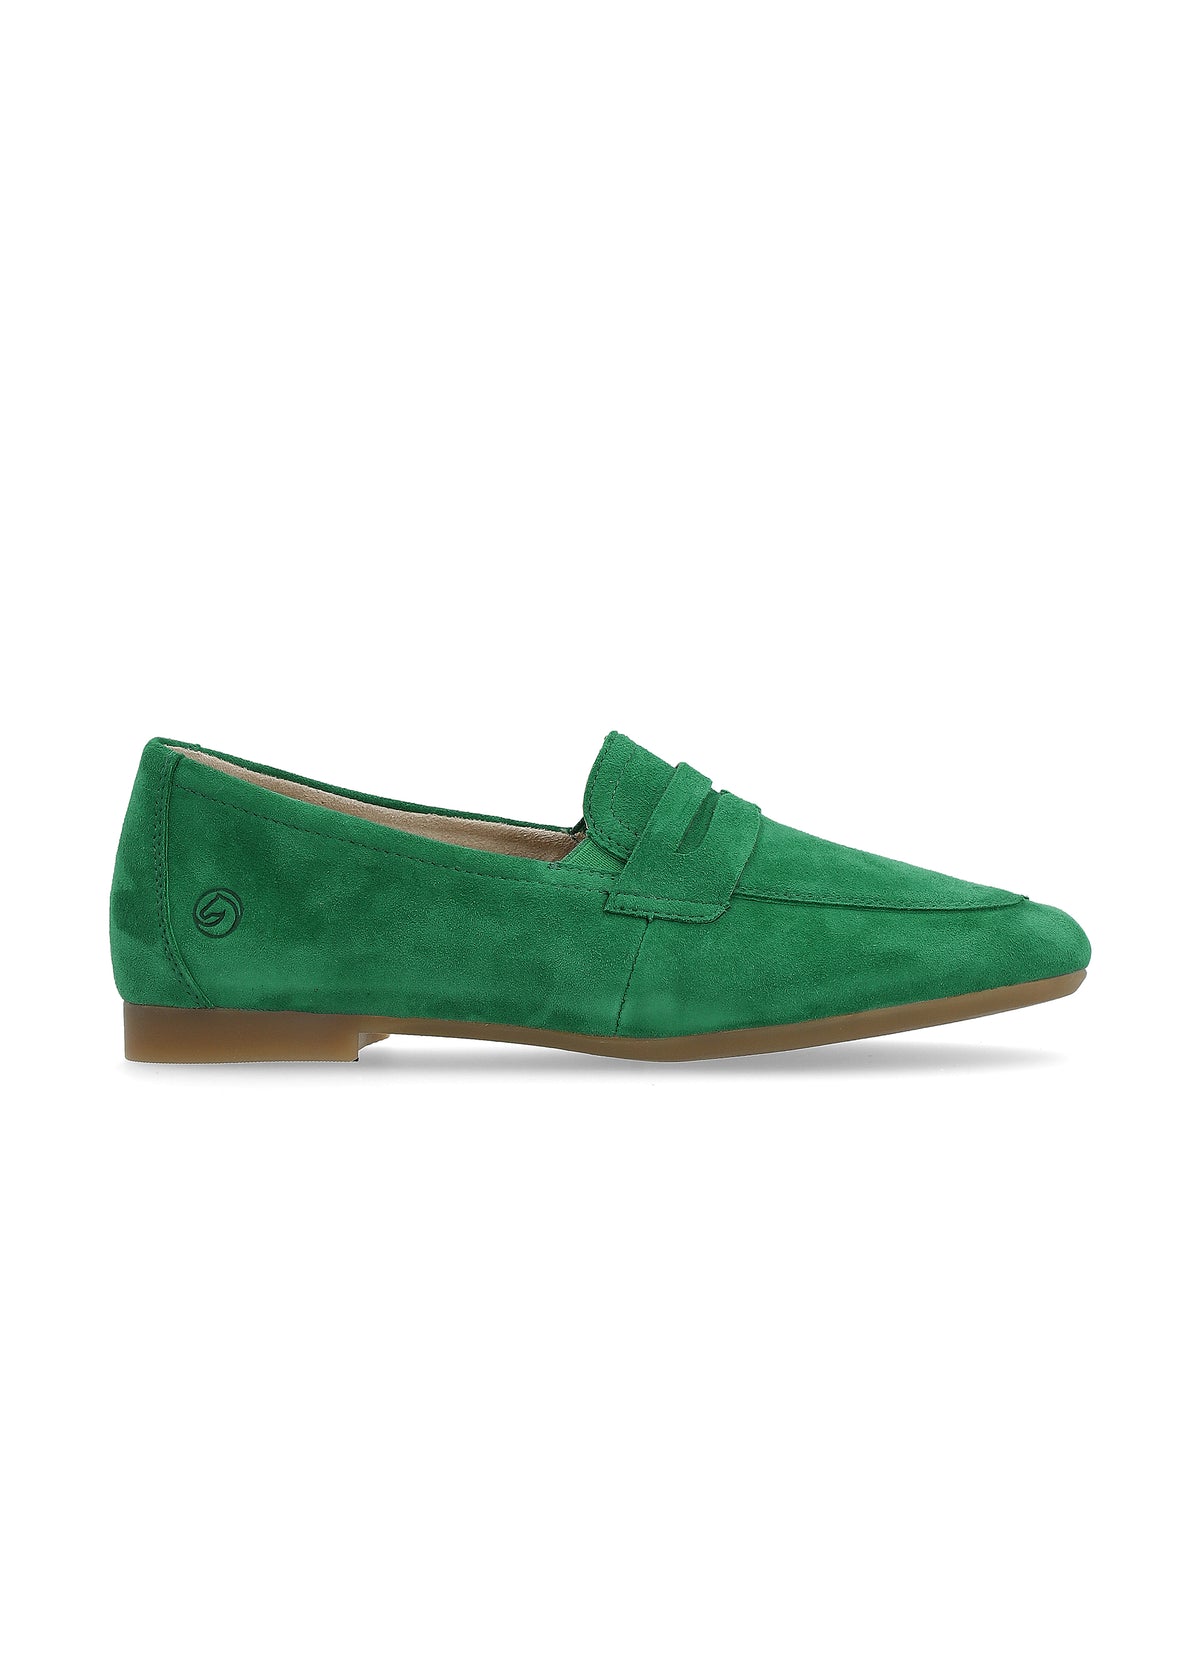 Loafers - grön mocka, loaferrem som dekoration